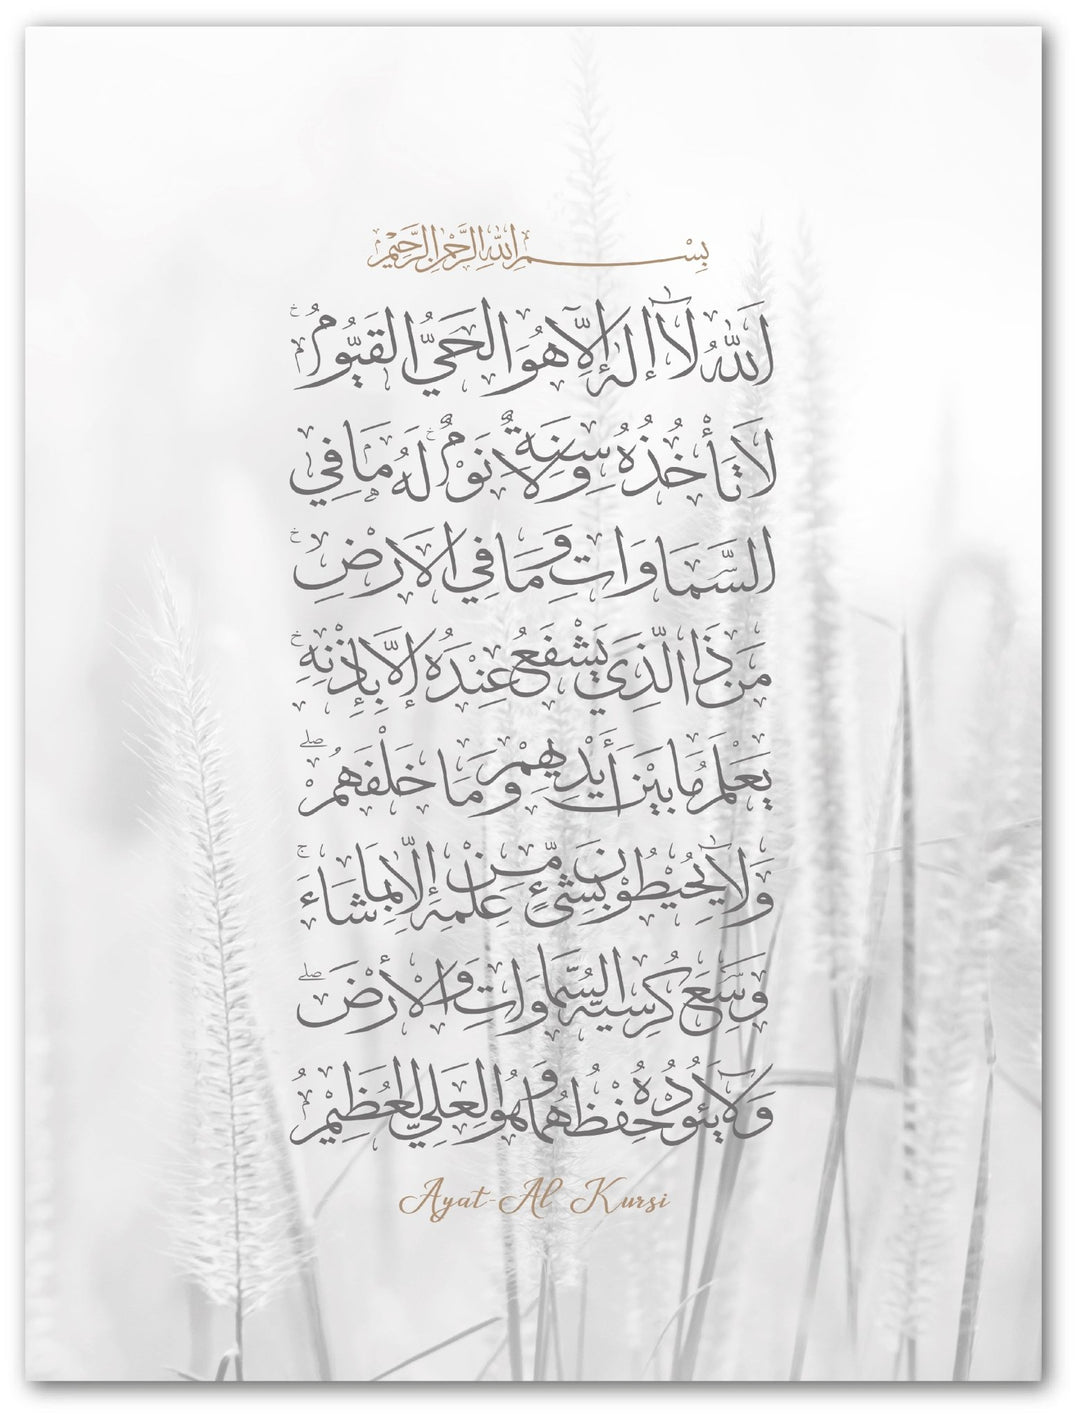 Ayat Al Kursi - Beautiful Wall